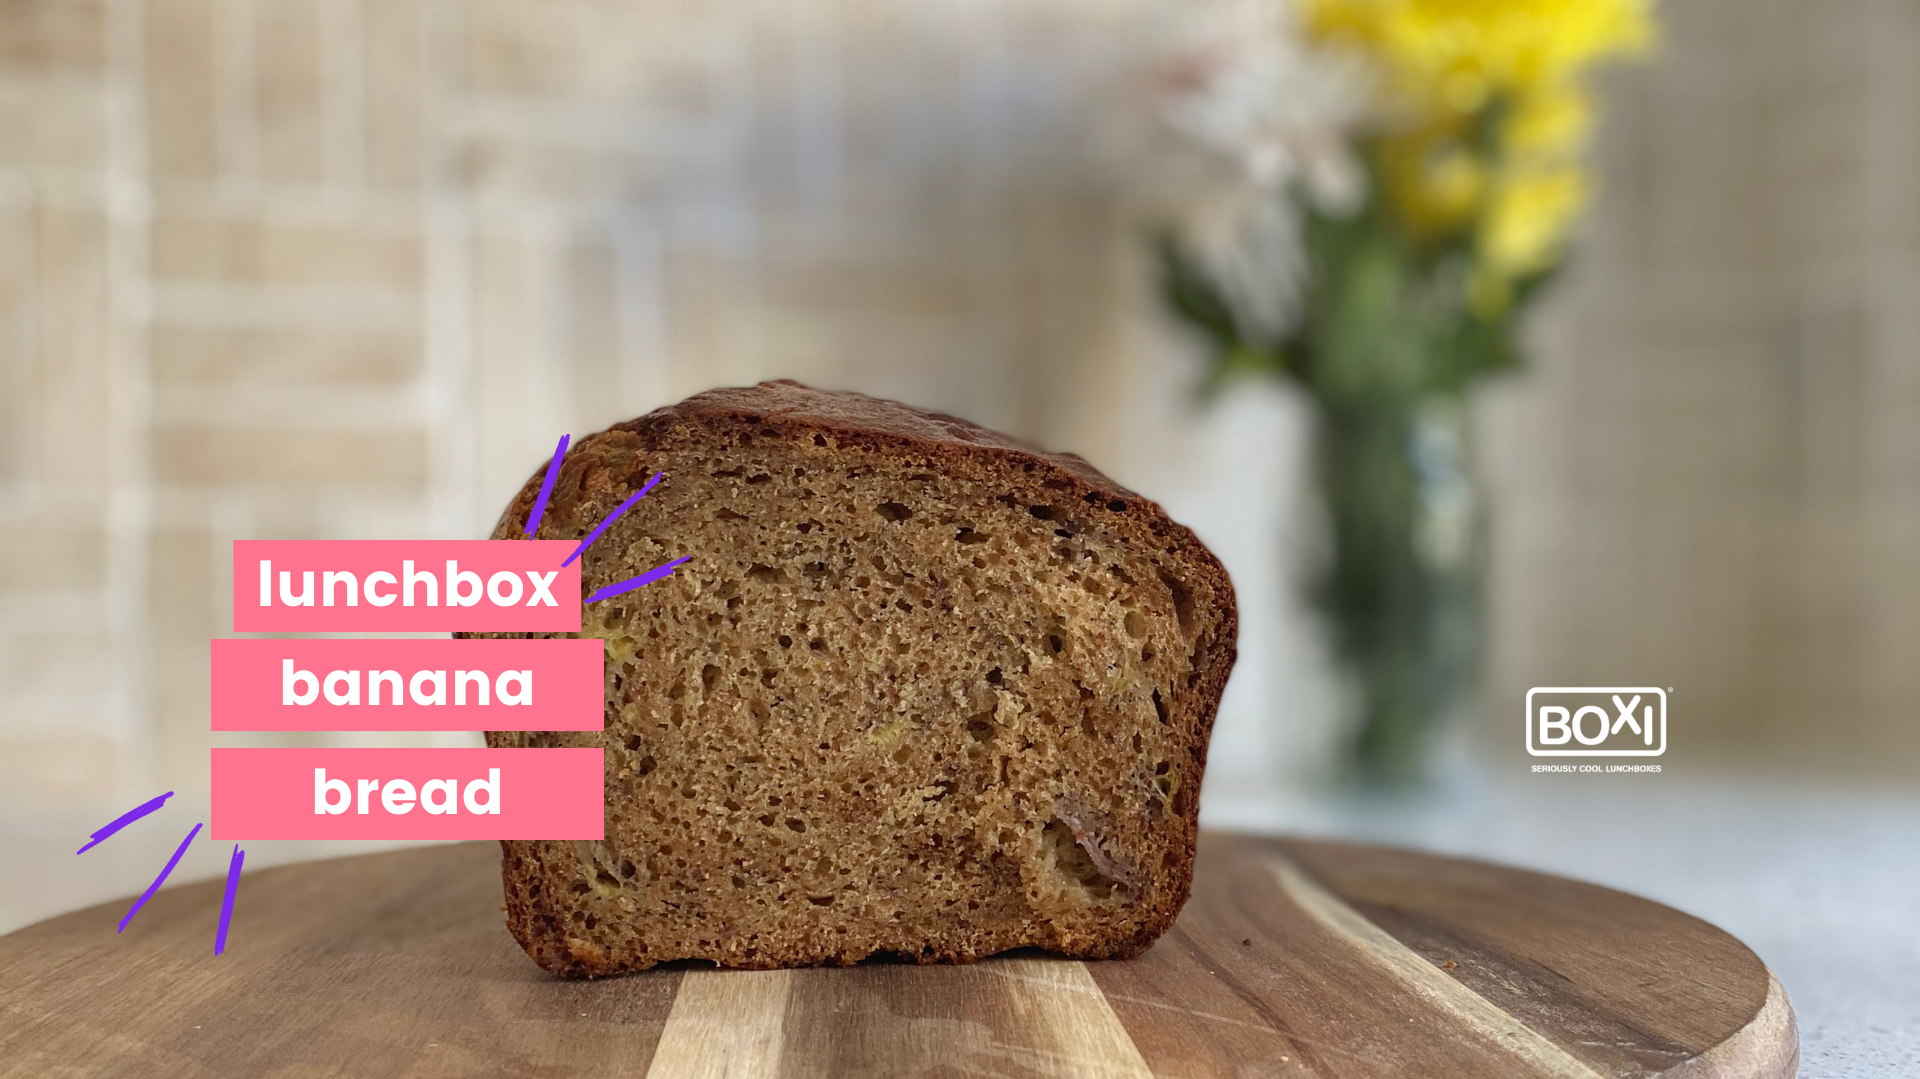 Lunchbox Banana Bread Boxi